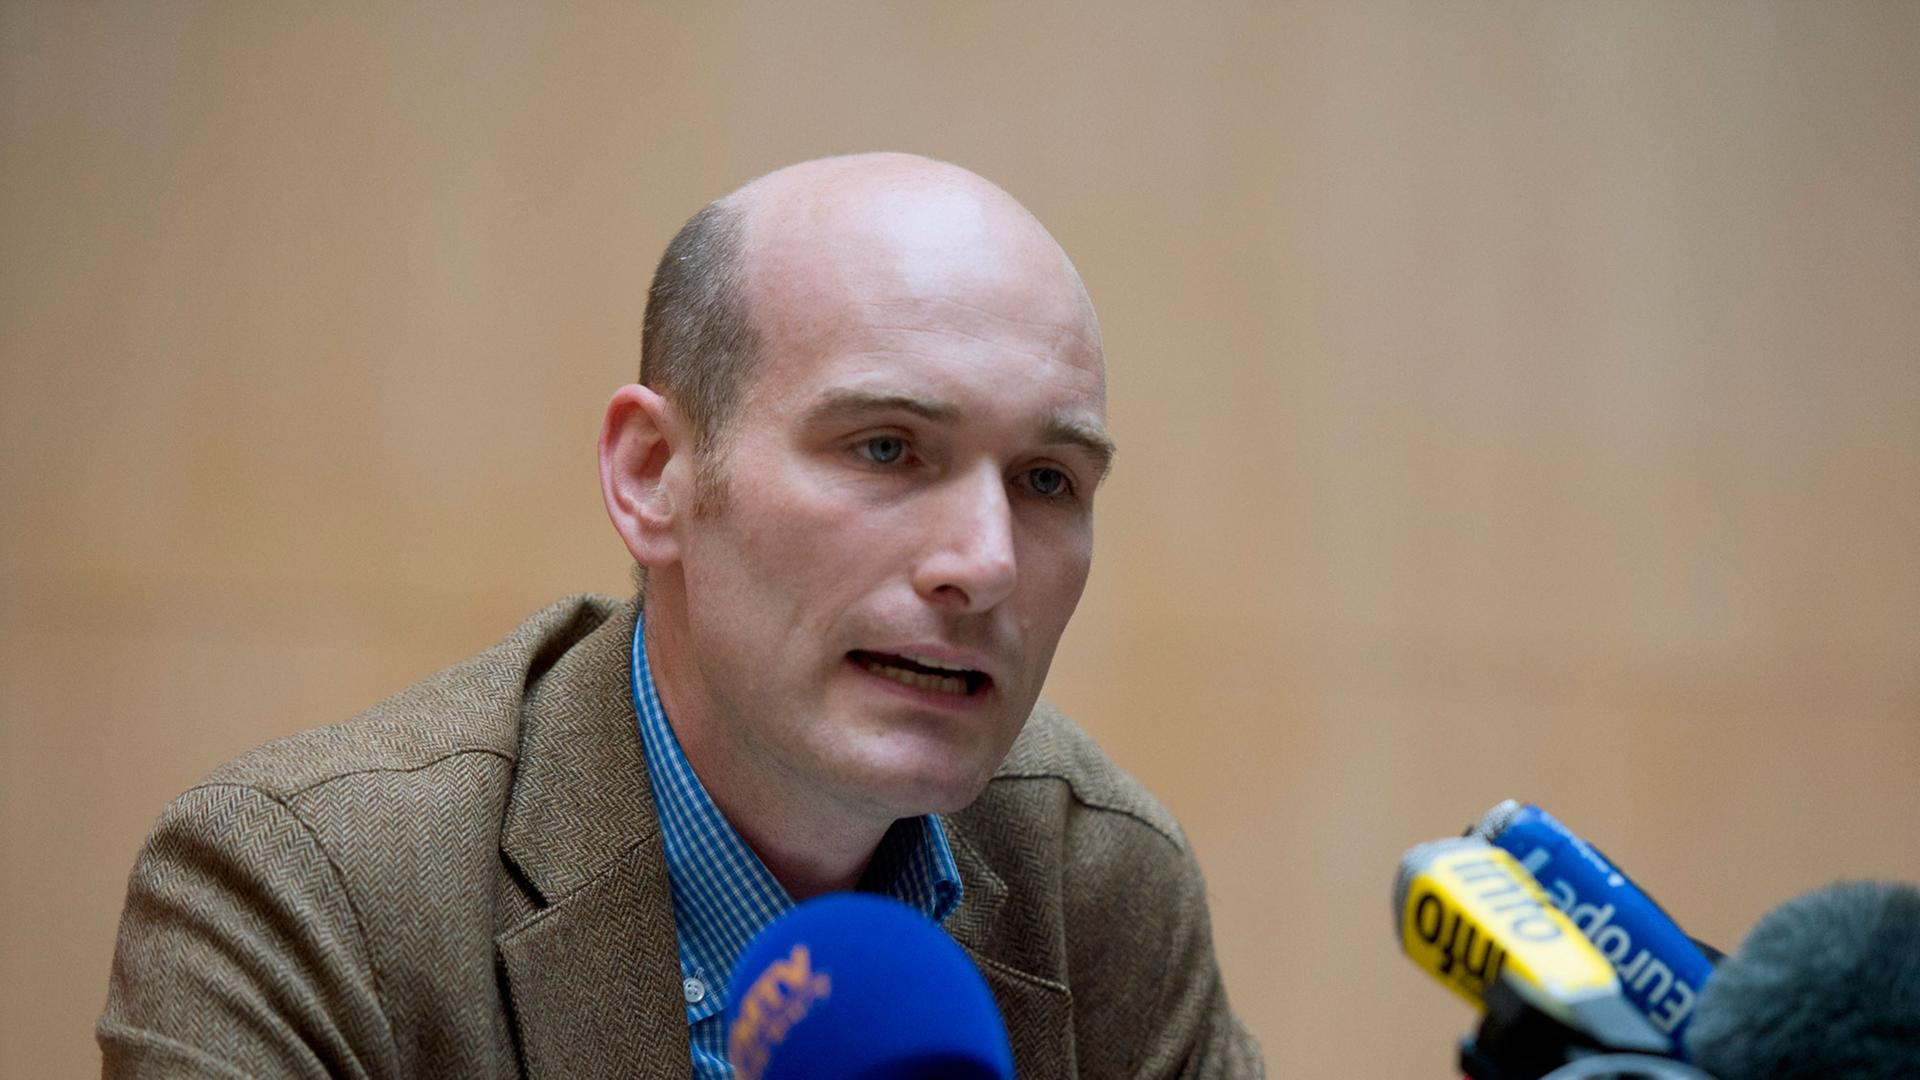 Der französische Journalist Nicolas Hénin wurde in Syrien von Islamisten als Geisel genommen und gefoltert.